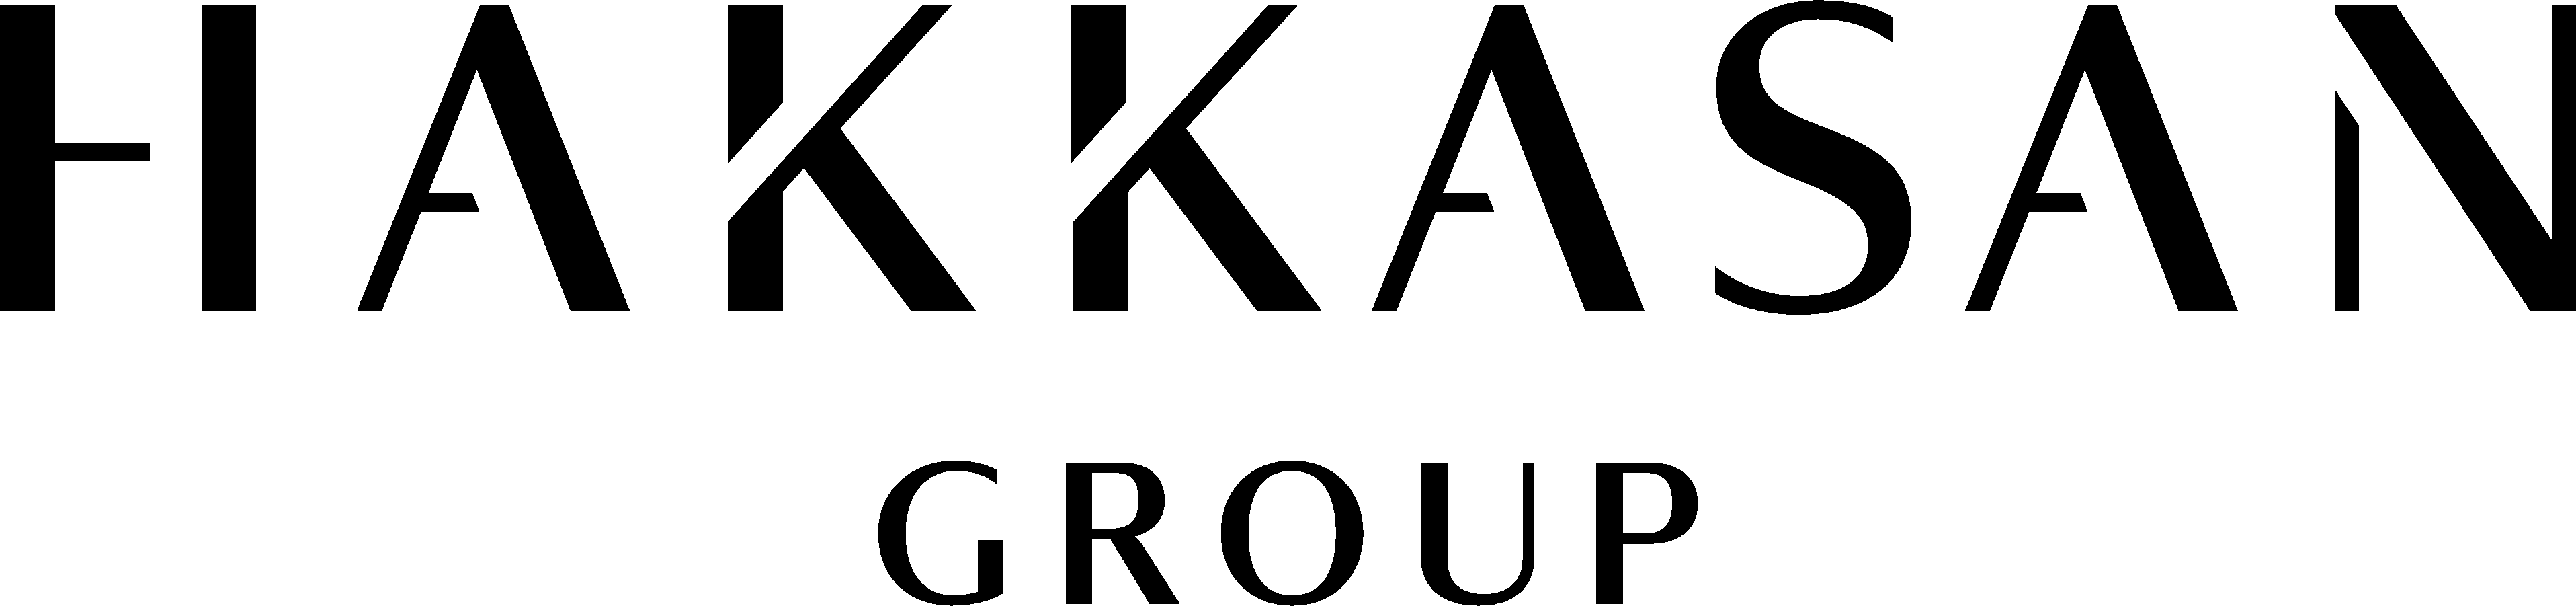 Hakkasan Group logo